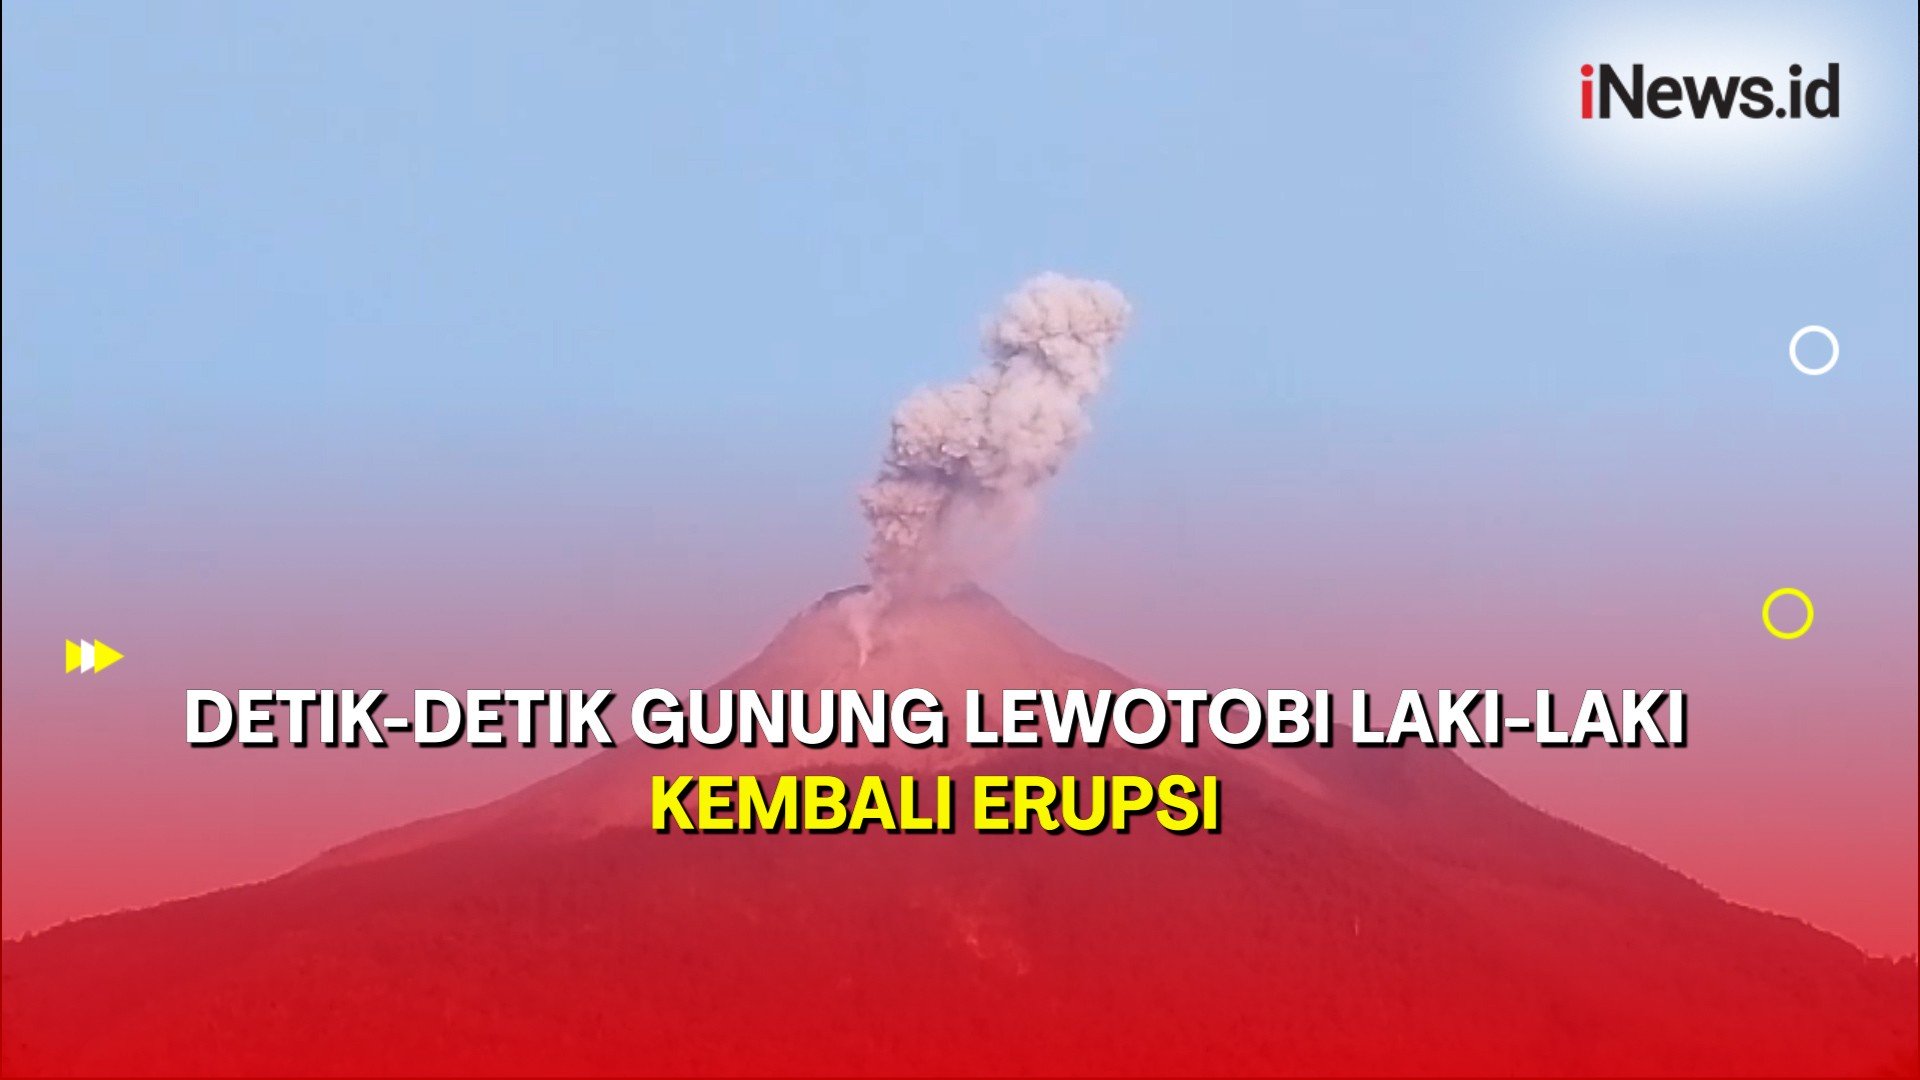 Gunung Lewotobi Laki-Laki Kembali Erupsi, Semburkan Abu Vulkanik 700 Meter 